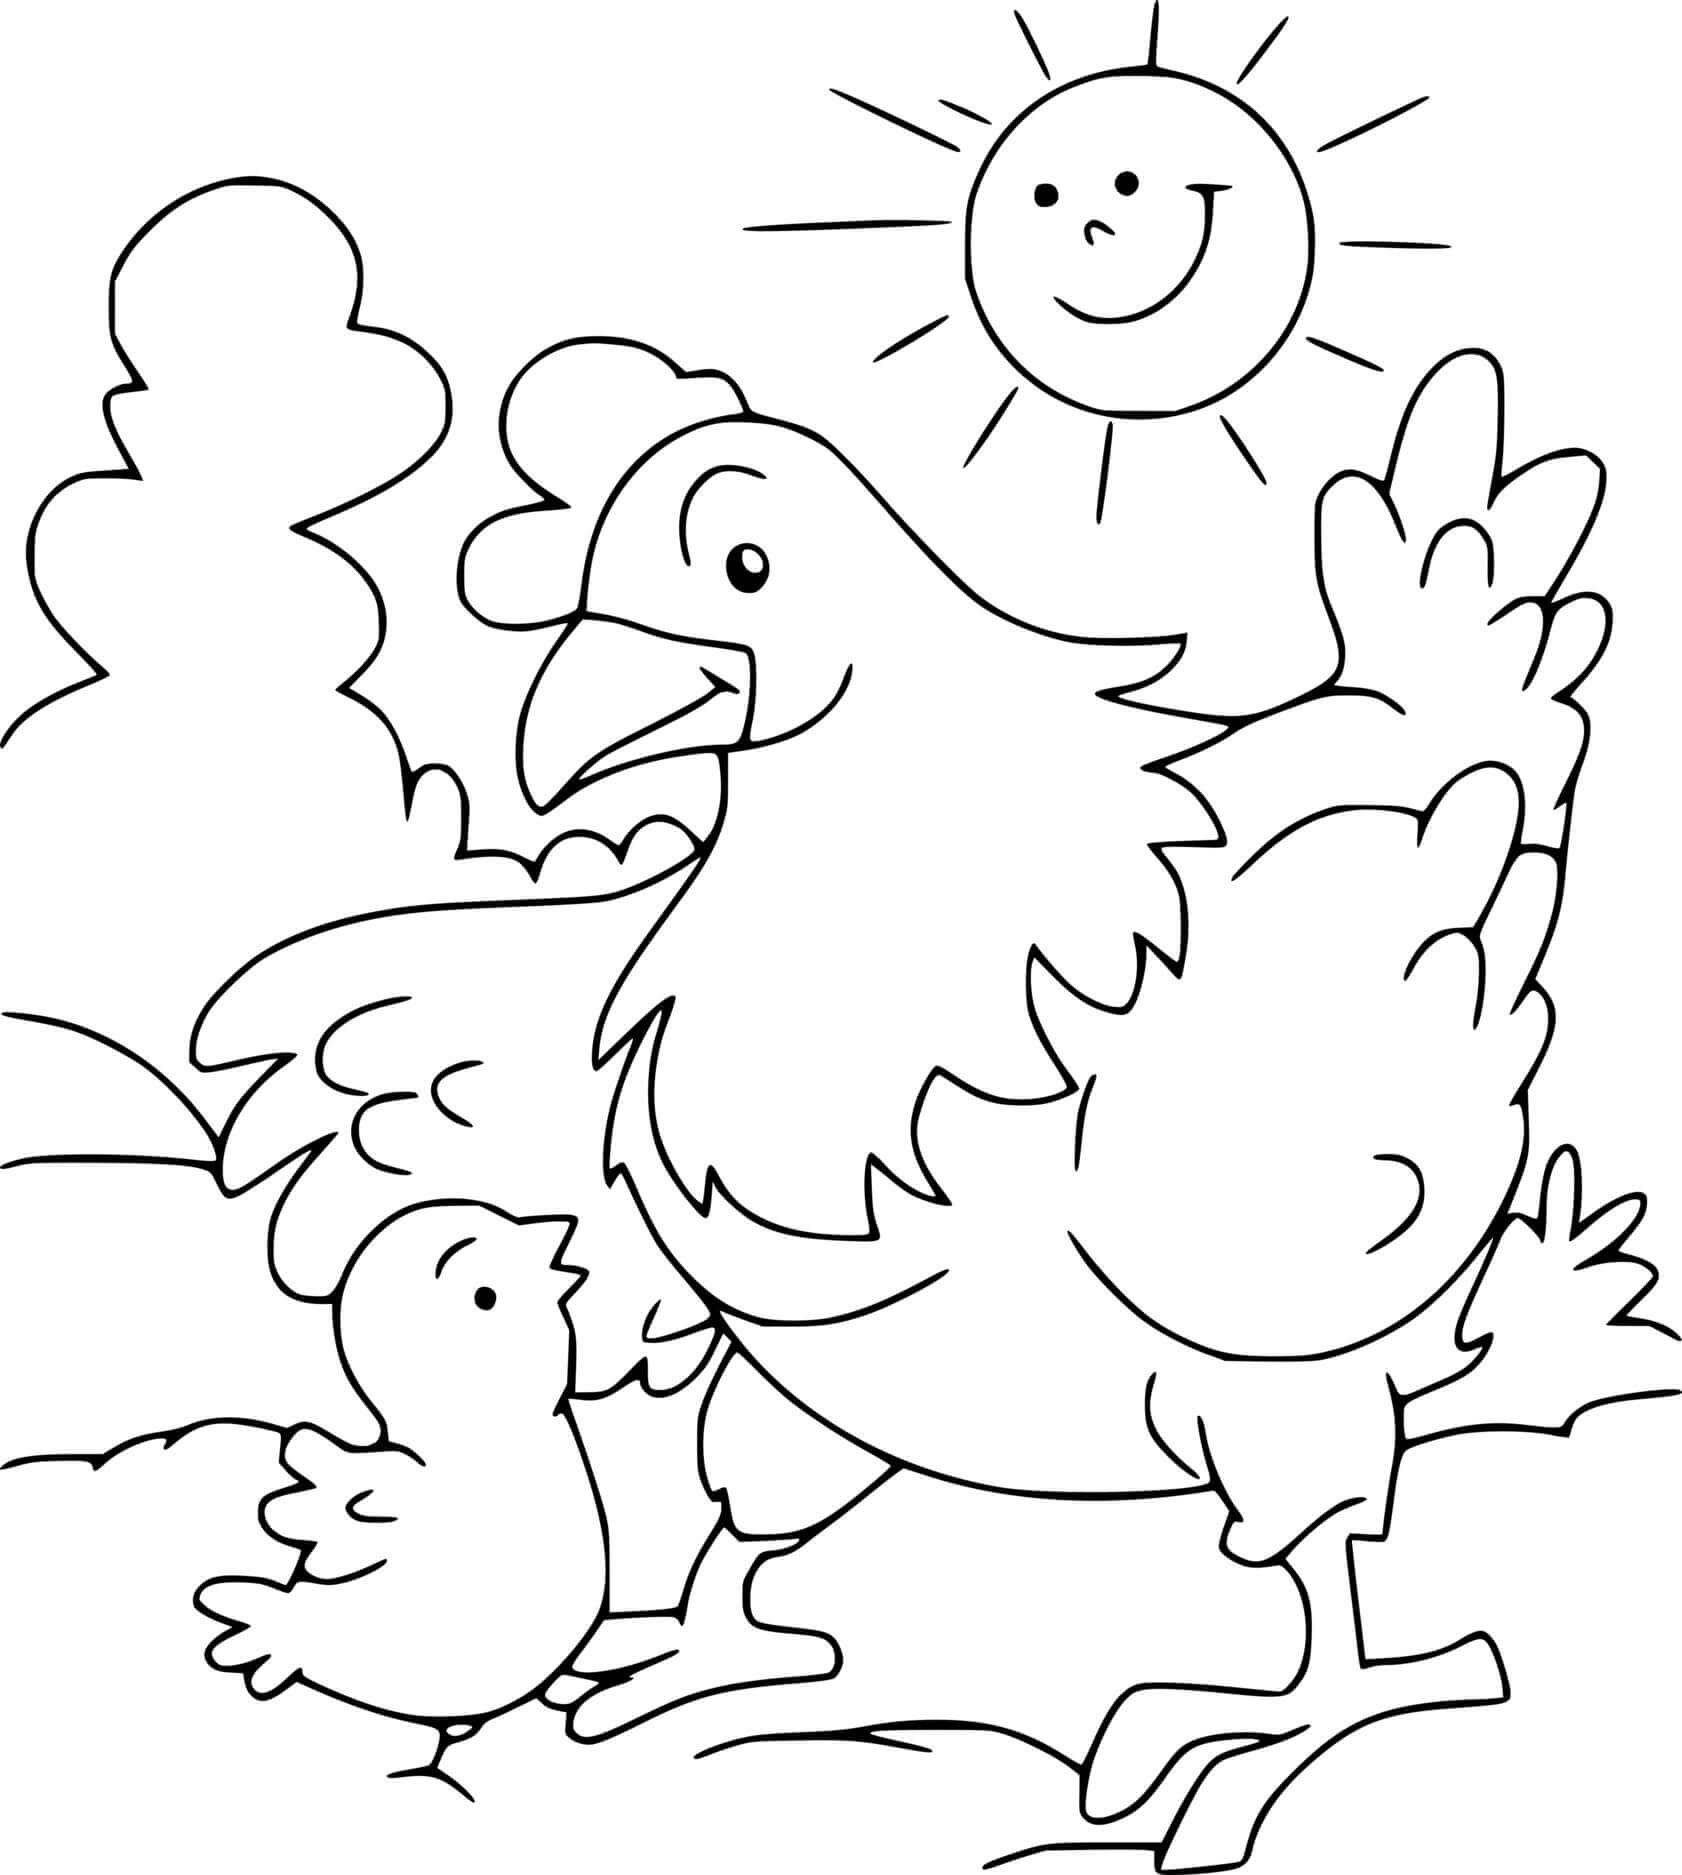 Poulets et Soleil coloring page